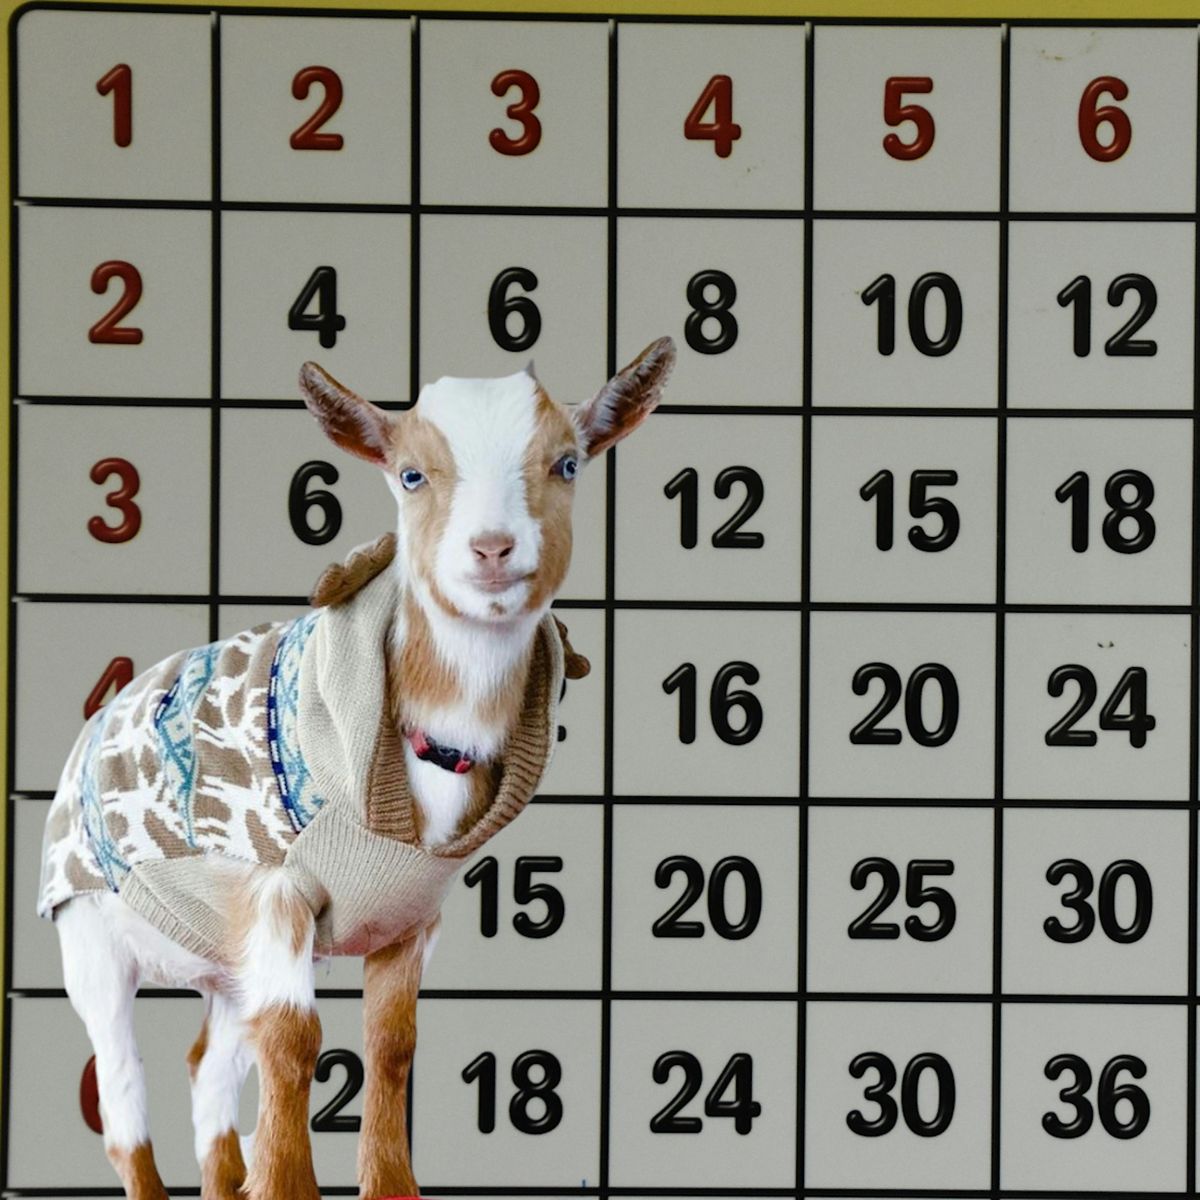 BINGOAT: Baby Goats + Bingo